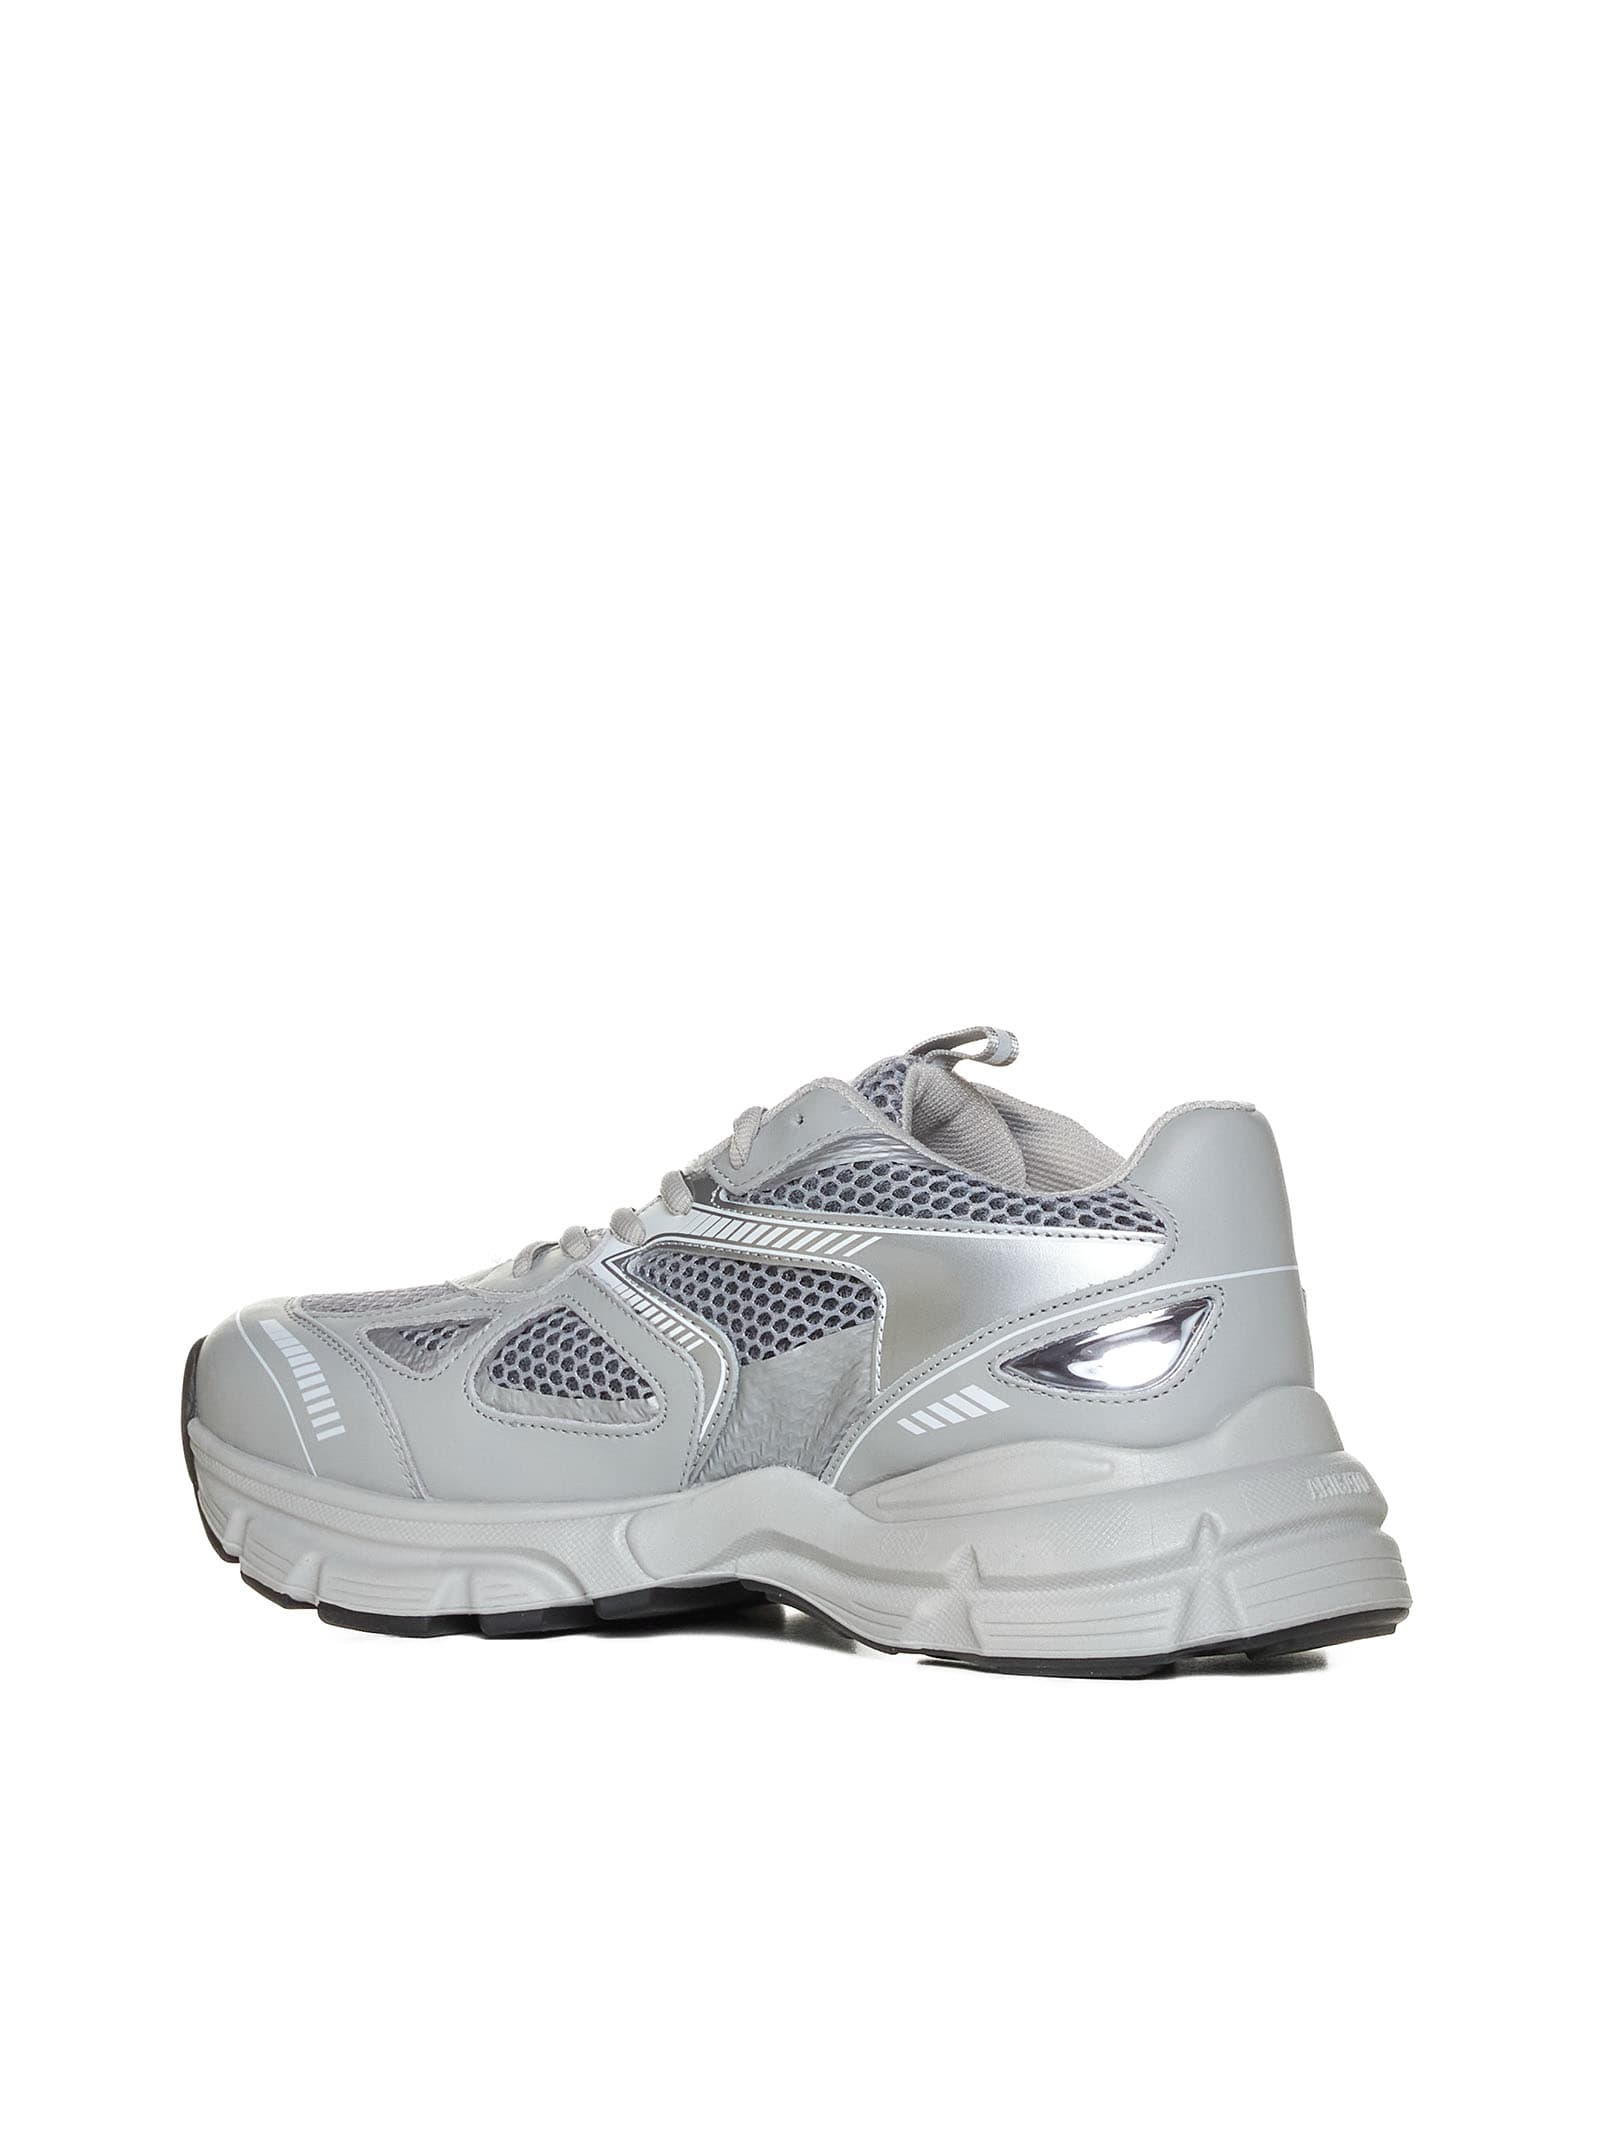 Shop Axel Arigato Sneakers In Grey/silver